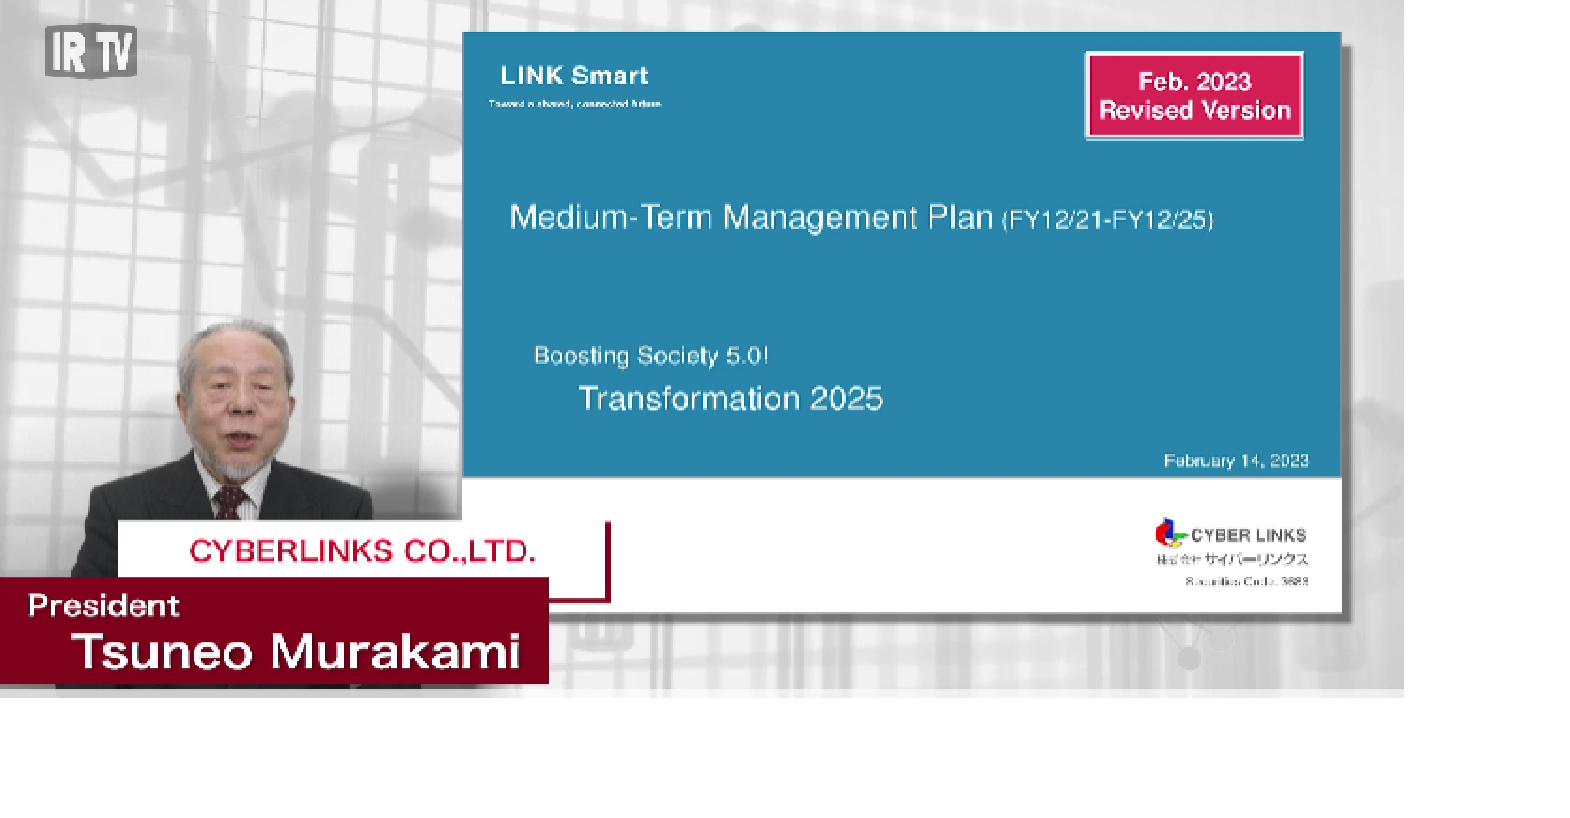 Medium Term Management Plan (FY 12/21 - FY 12/25)